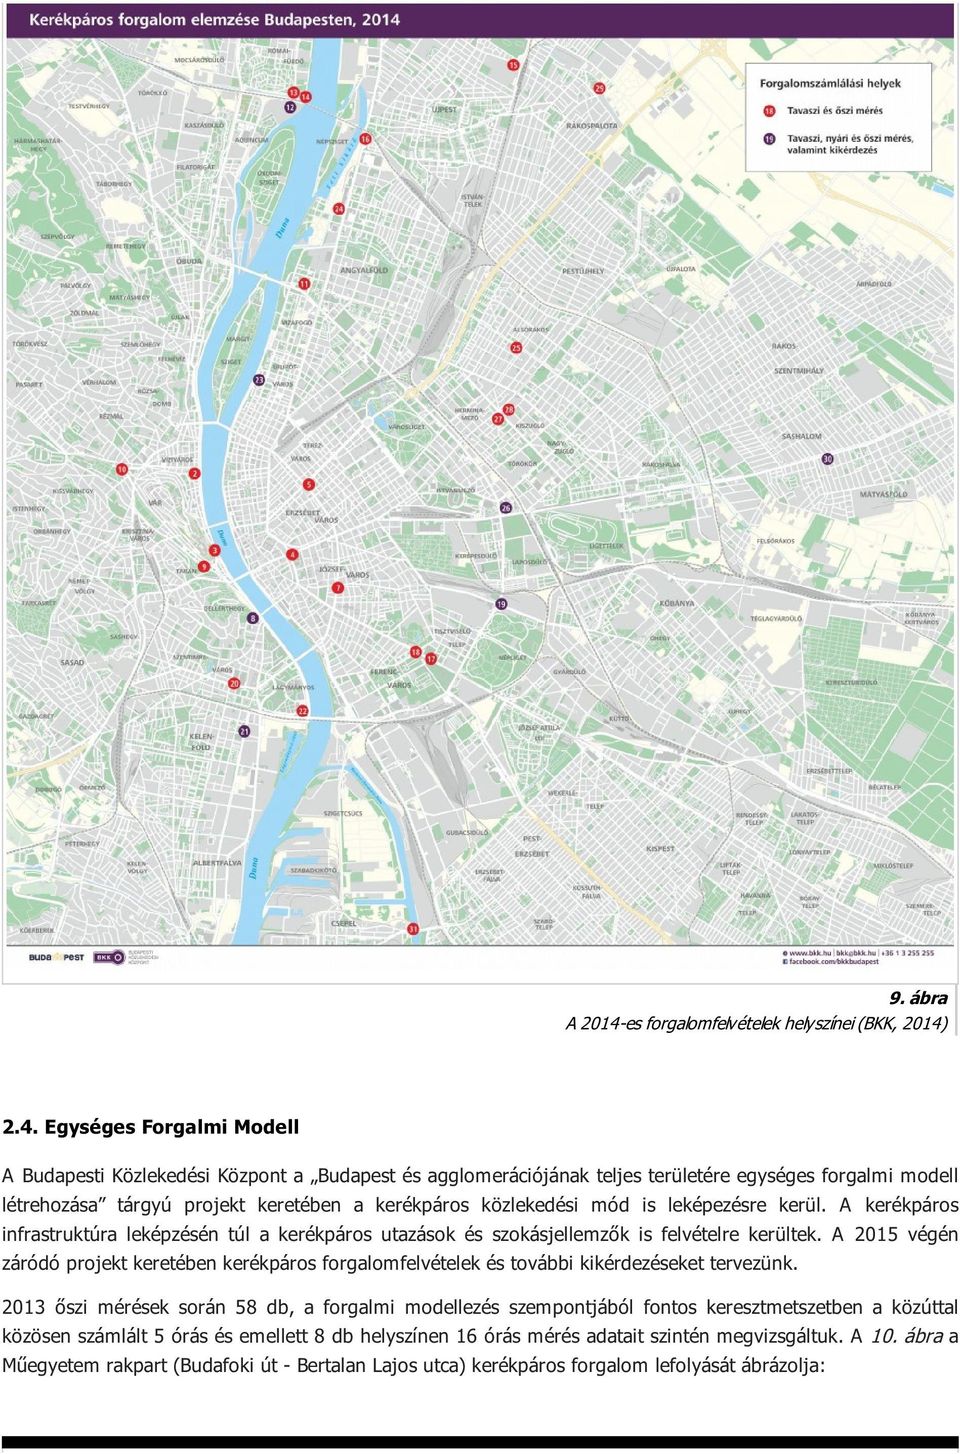 2.4. Egységes Forgalmi Modell A Budapesti Közlekedési Központ a Budapest és agglomerációjának teljes területére egységes forgalmi modell létrehozása tárgyú projekt keretében a kerékpáros közlekedési